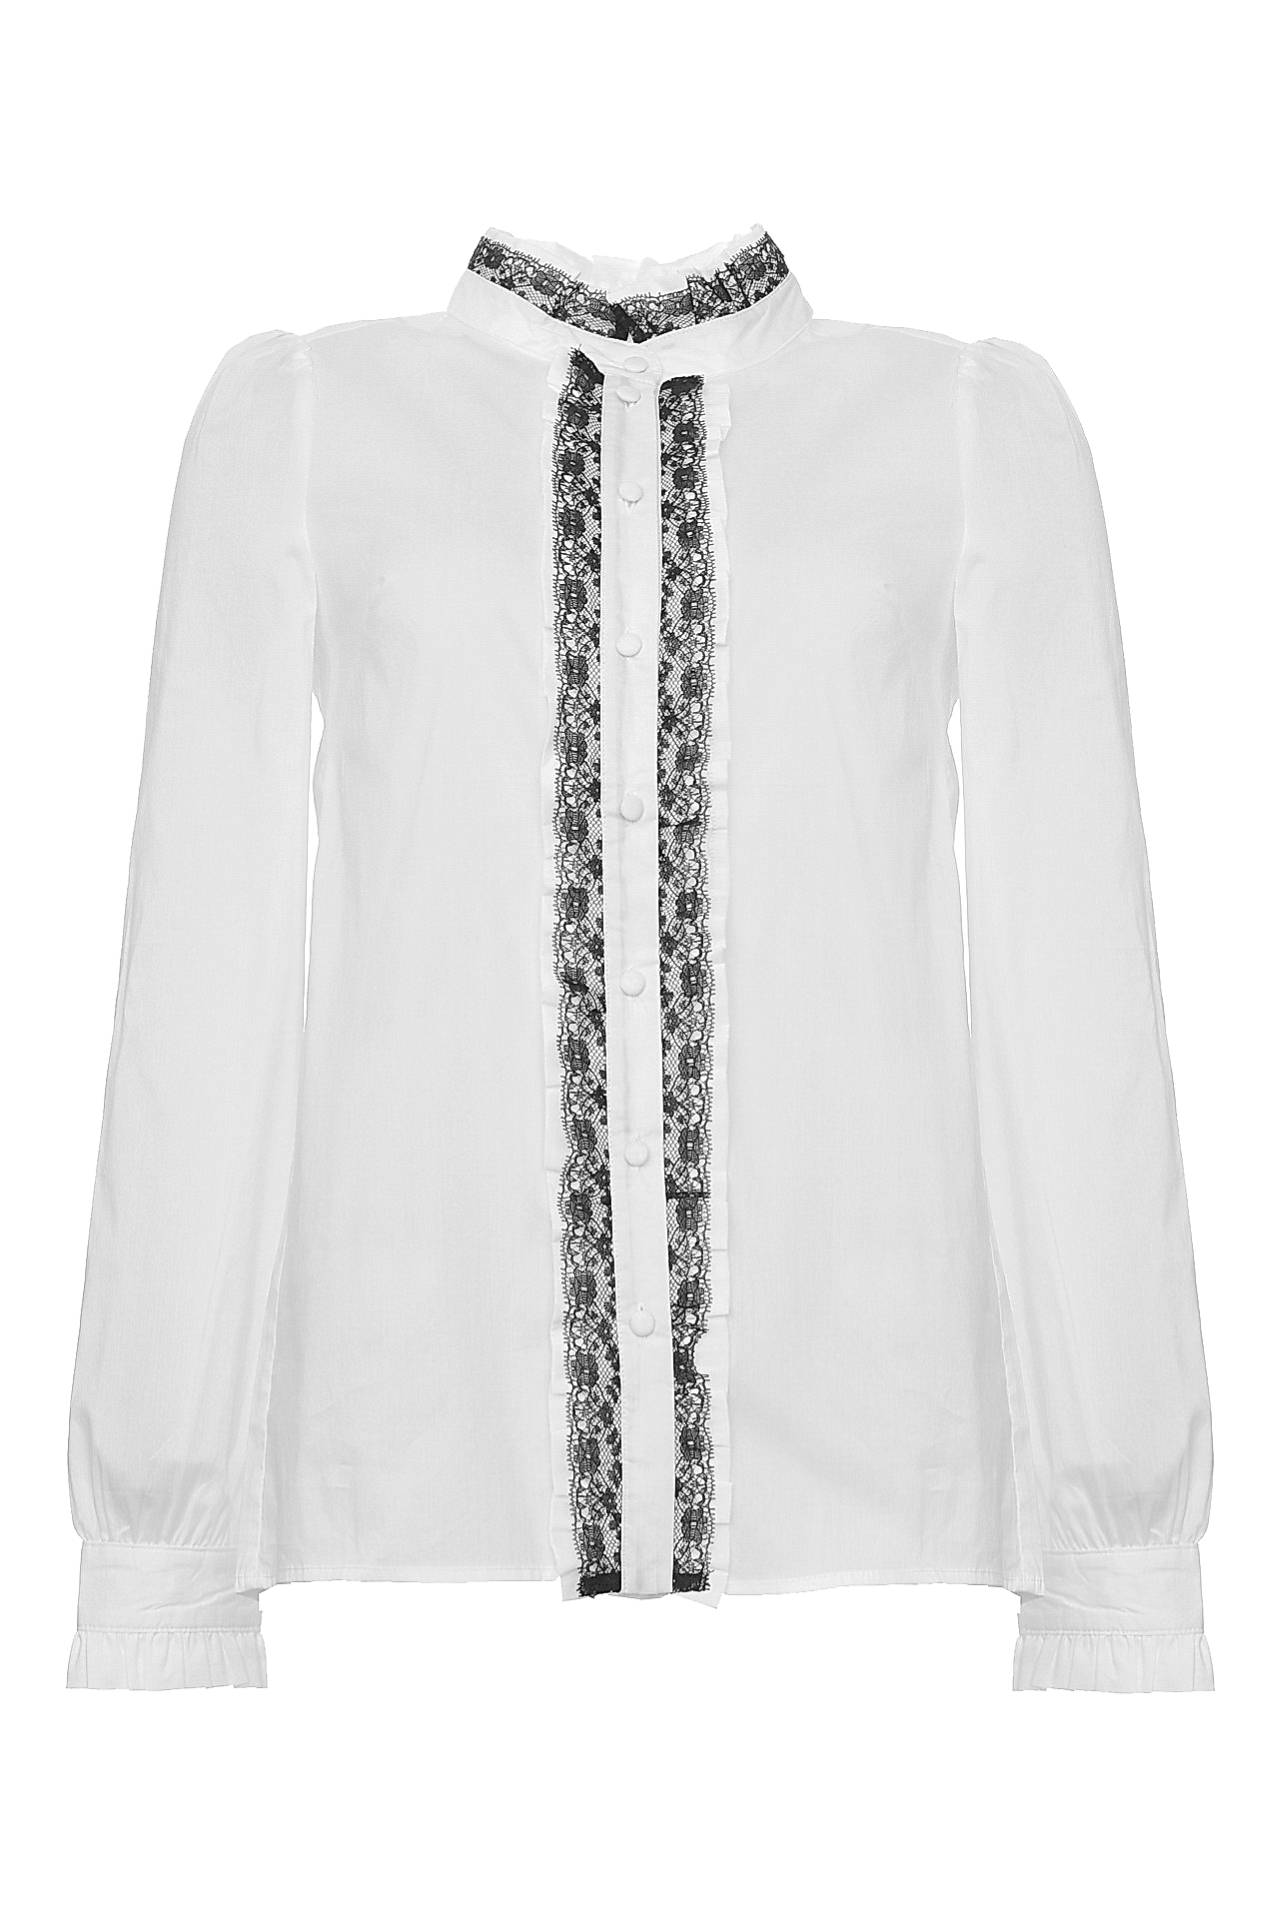 Одежда женская Блузка LETICIA MILANO (F172913/15.2). Купить за 7450 руб.